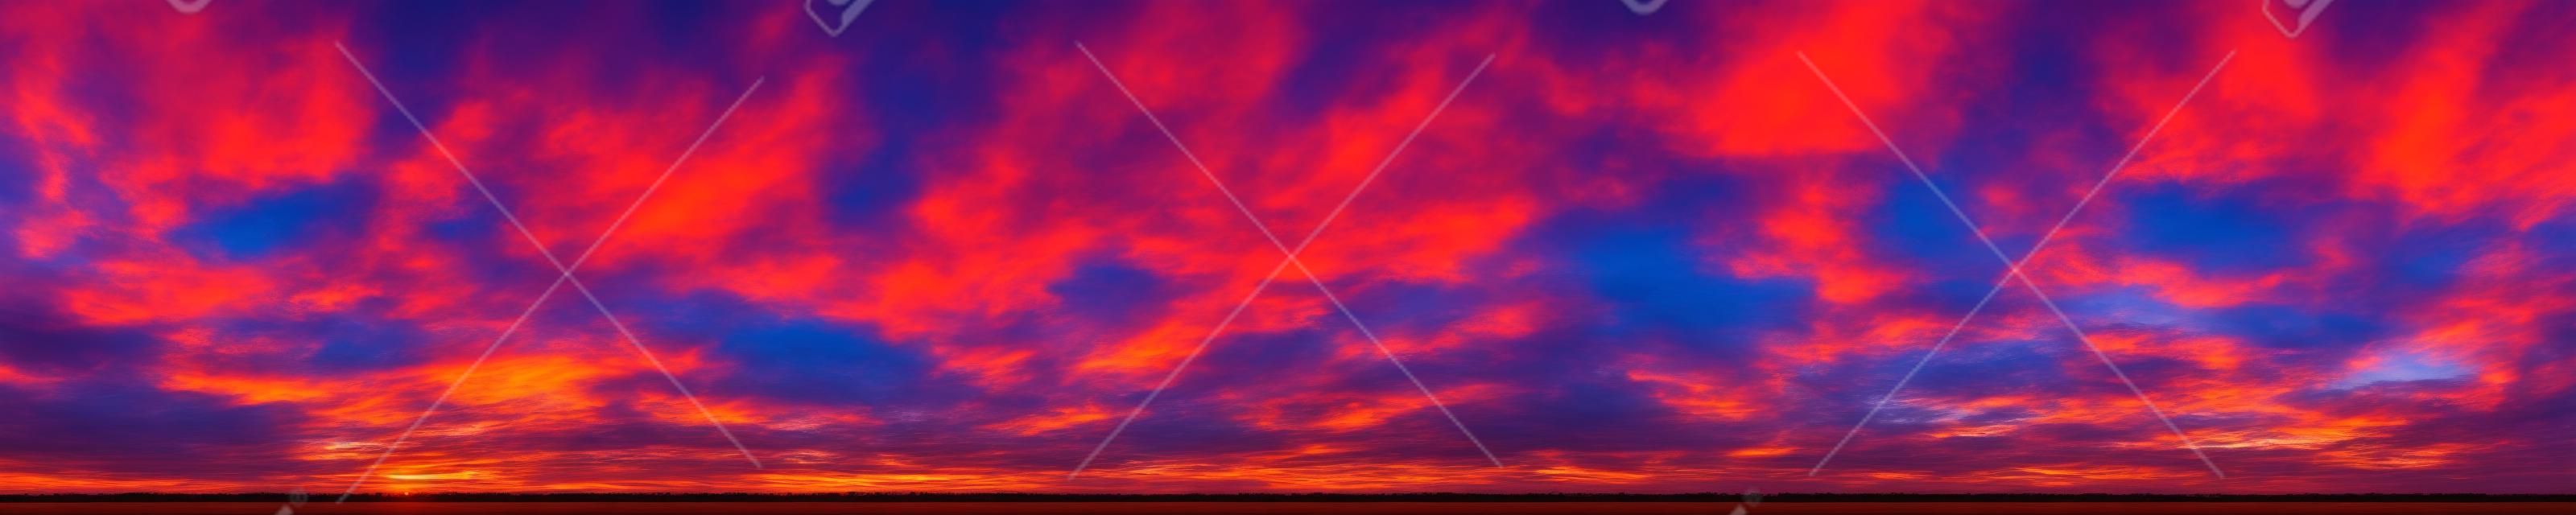 日の出と日の入りの美しい雲と劇的な鮮やかな色のパノラマ。パノラマ画像。